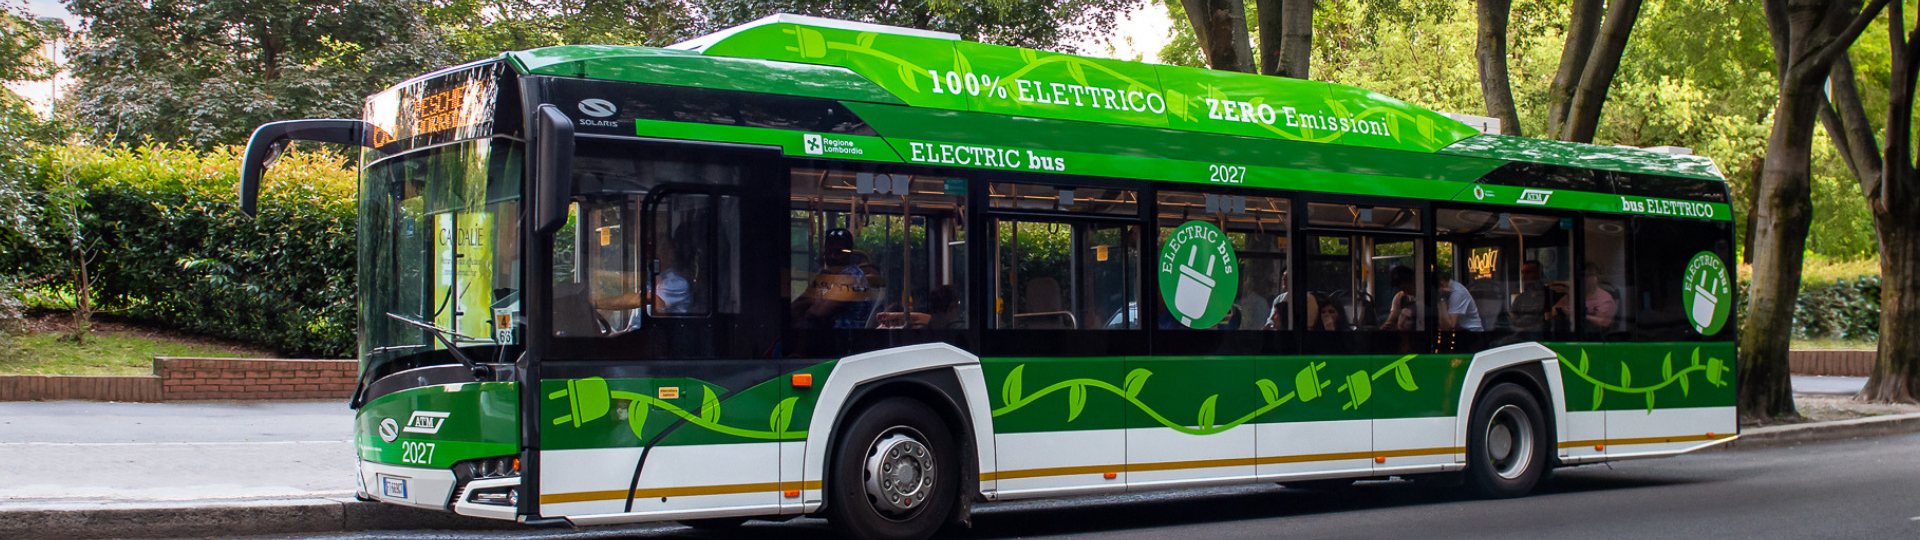 Mailand wählt Solaris als Lieferanten von bis zu 250 Elektrobussen!